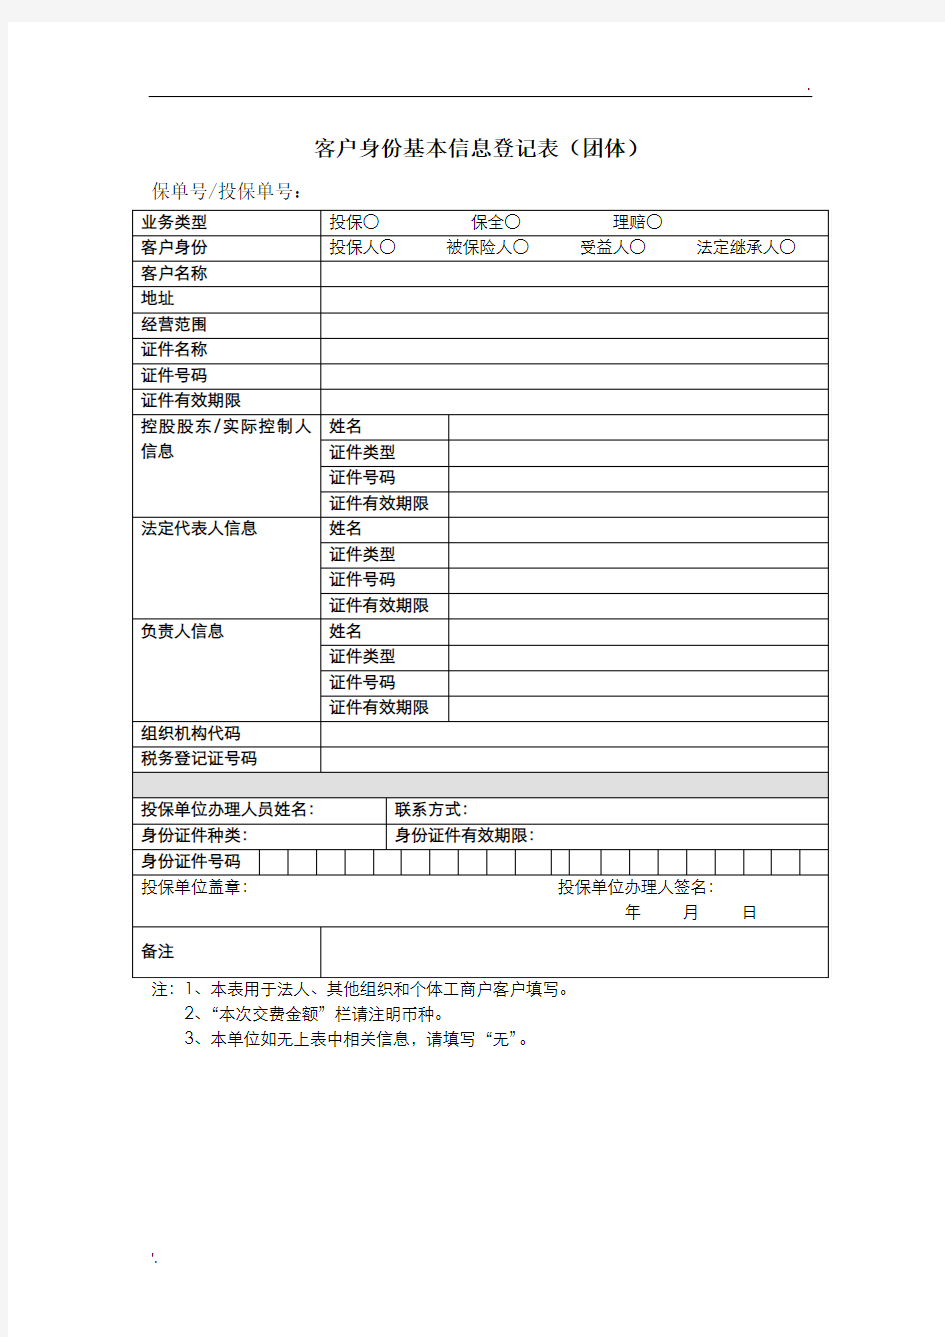 中国人寿客户身份基本信息登记表(团体)